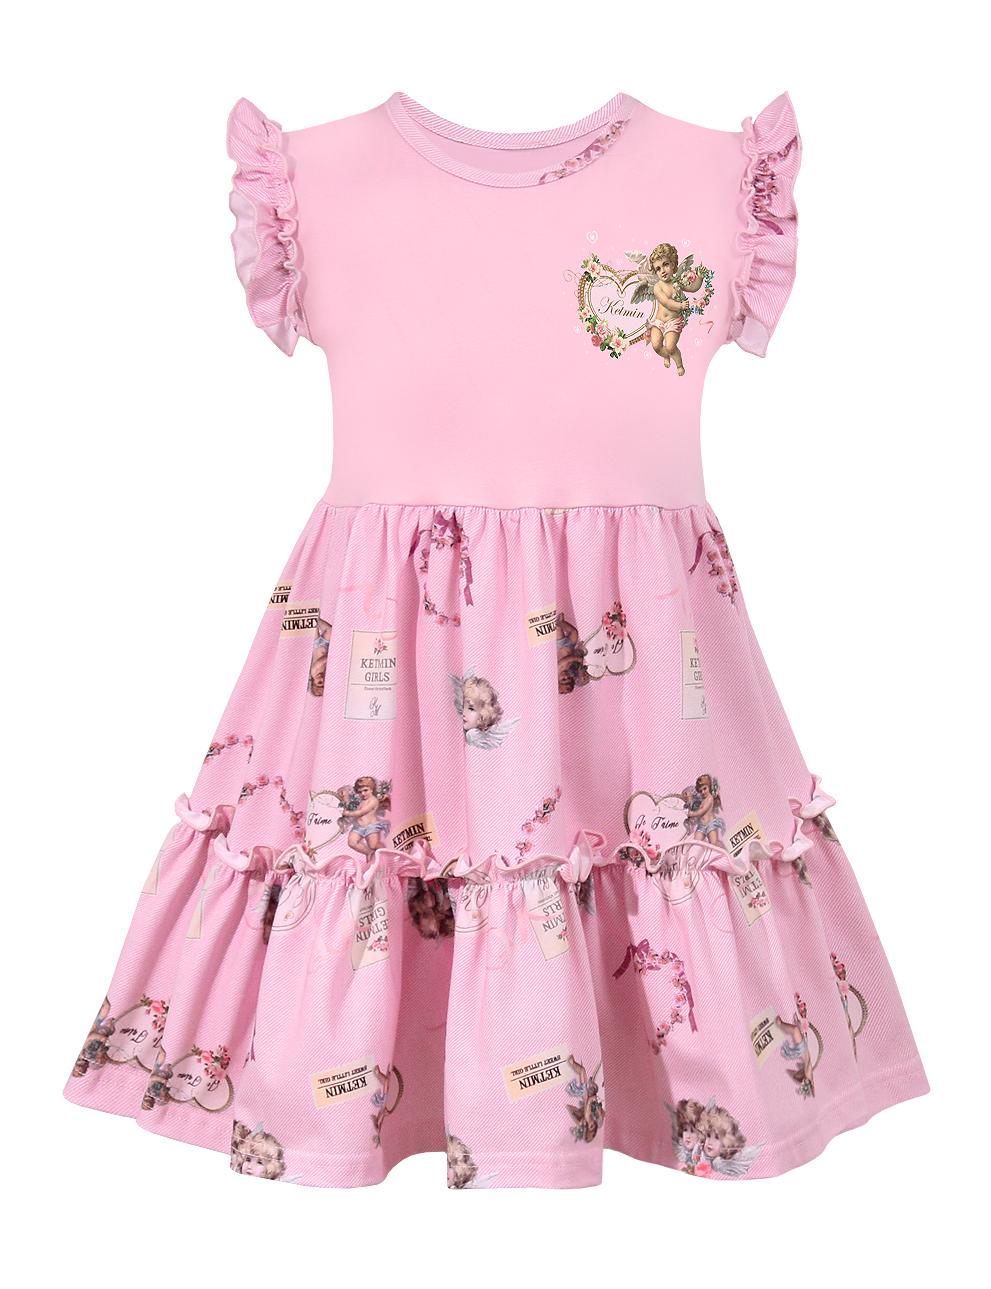 Платье для девочки KETMIN КОКЕТКА цв.Ангел розовый